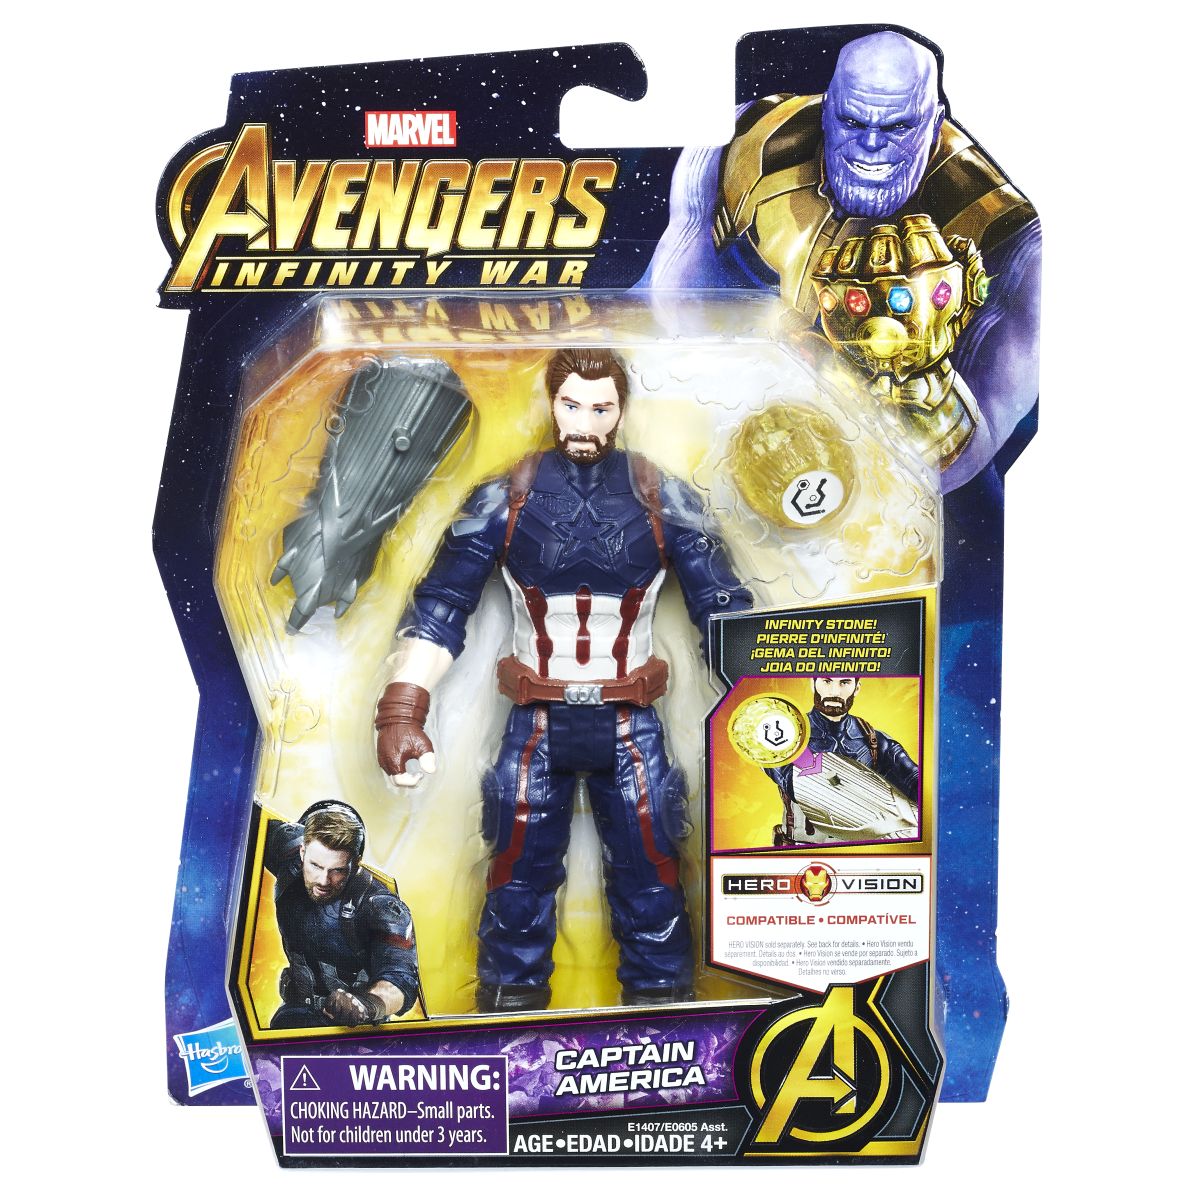 Marvel Avengers Infinity War 6 Inch Figure Assortment Captain America In Pkg